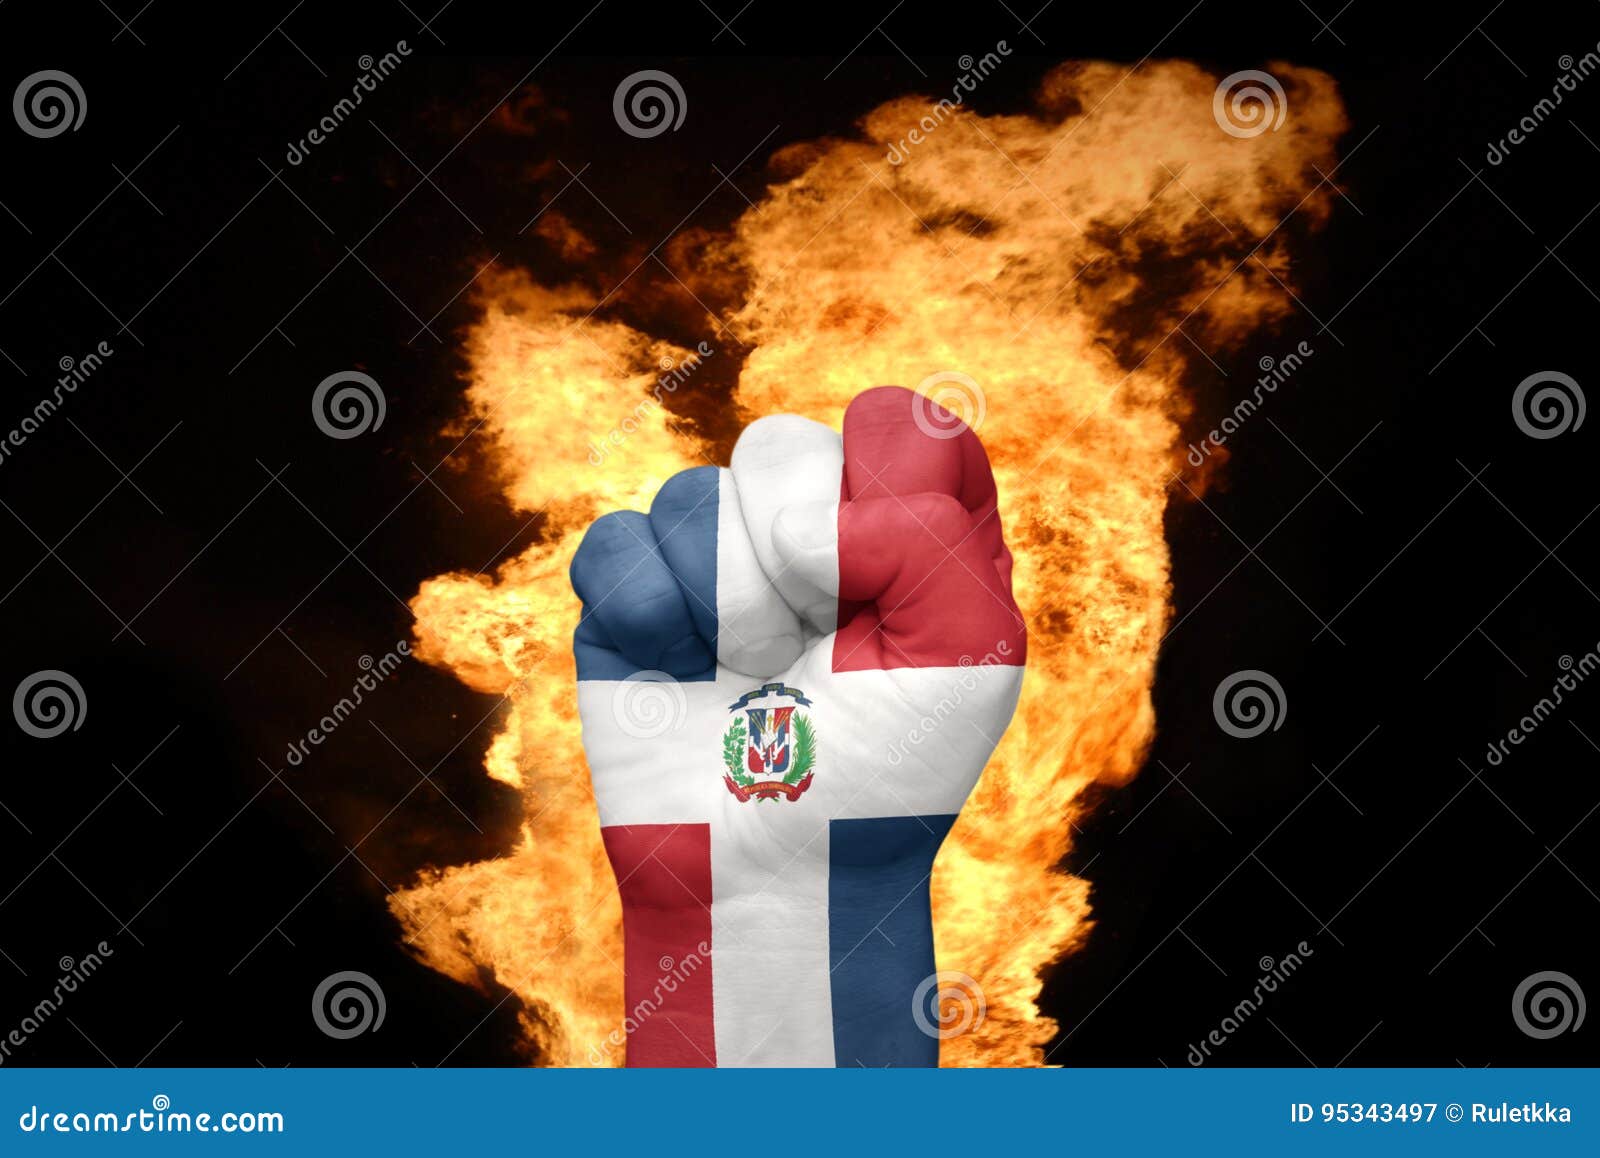 Mettez le feu au poing avec le drapeau national de la République Dominicaine